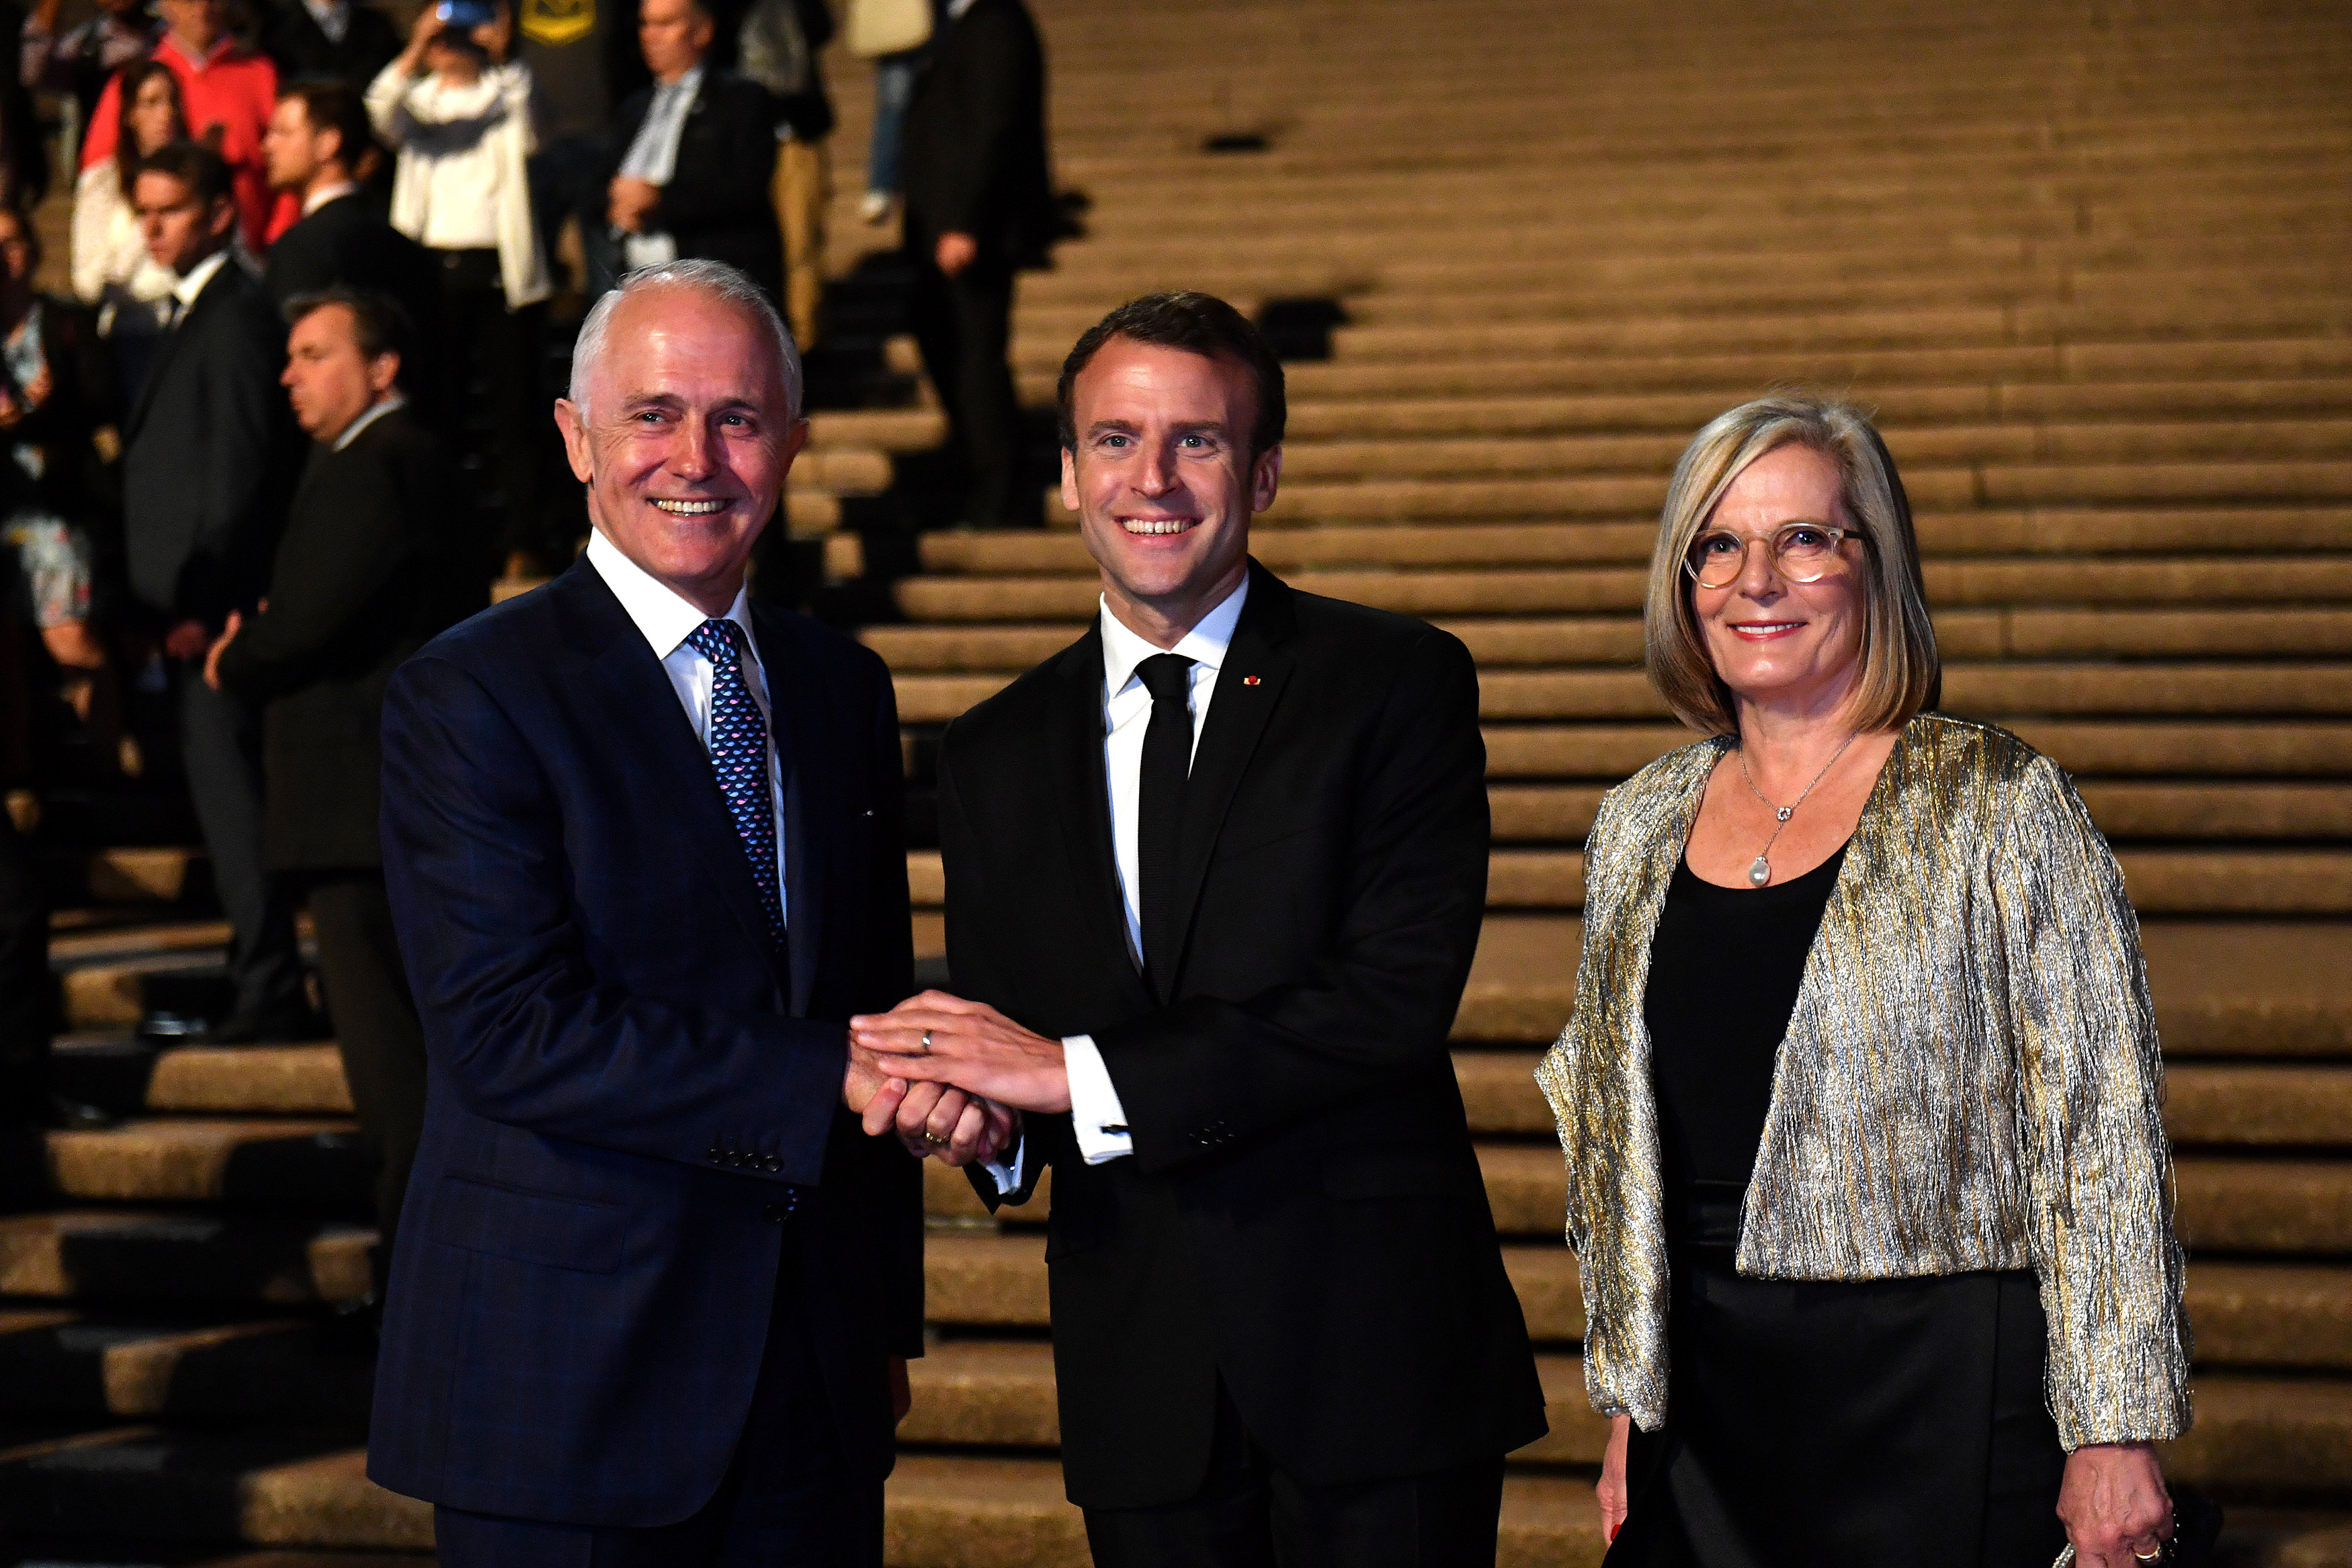 ¡Tremendo pelón! Macron llama “deliciosa” a esposa del primer ministro australiano